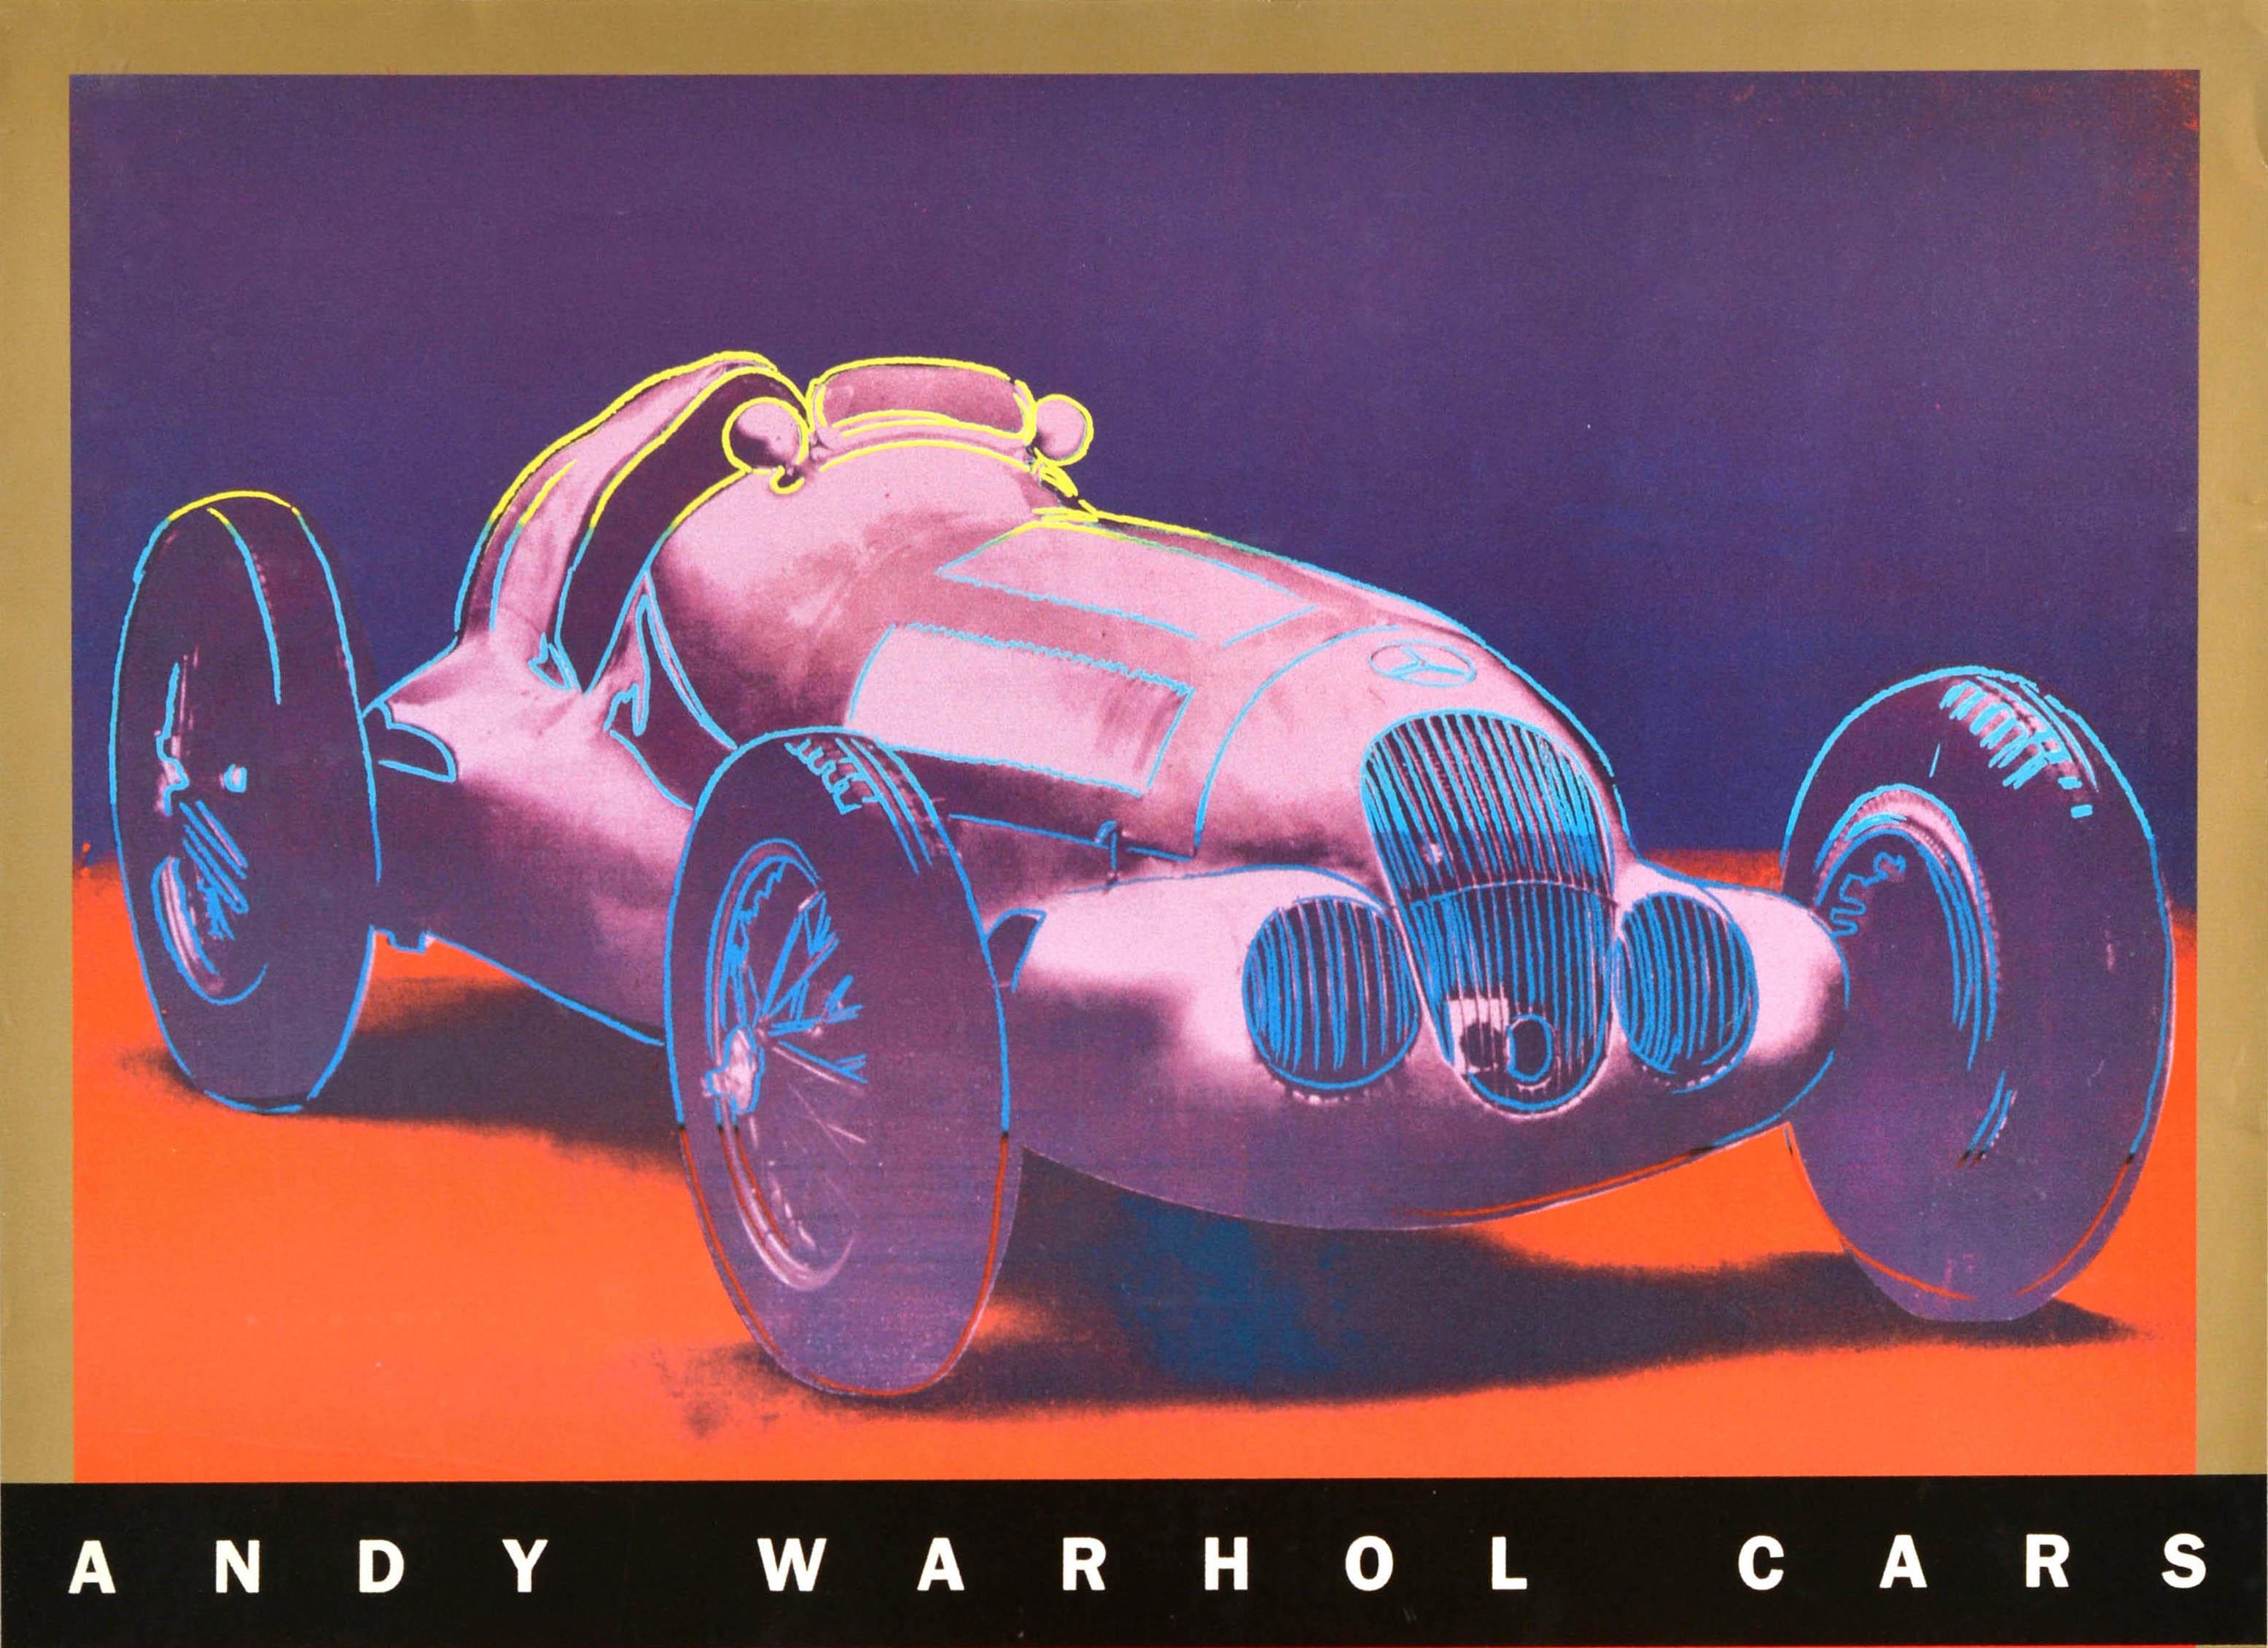 Affiche publicitaire originale pour l'exposition Andy Warhol Cars au Solomon R. Guggenheim Museum de New York, qui s'est tenue du 30 septembre au 27 novembre 1988. Elle présente une image colorée de deux voitures de course Mercedes Benz sur fond